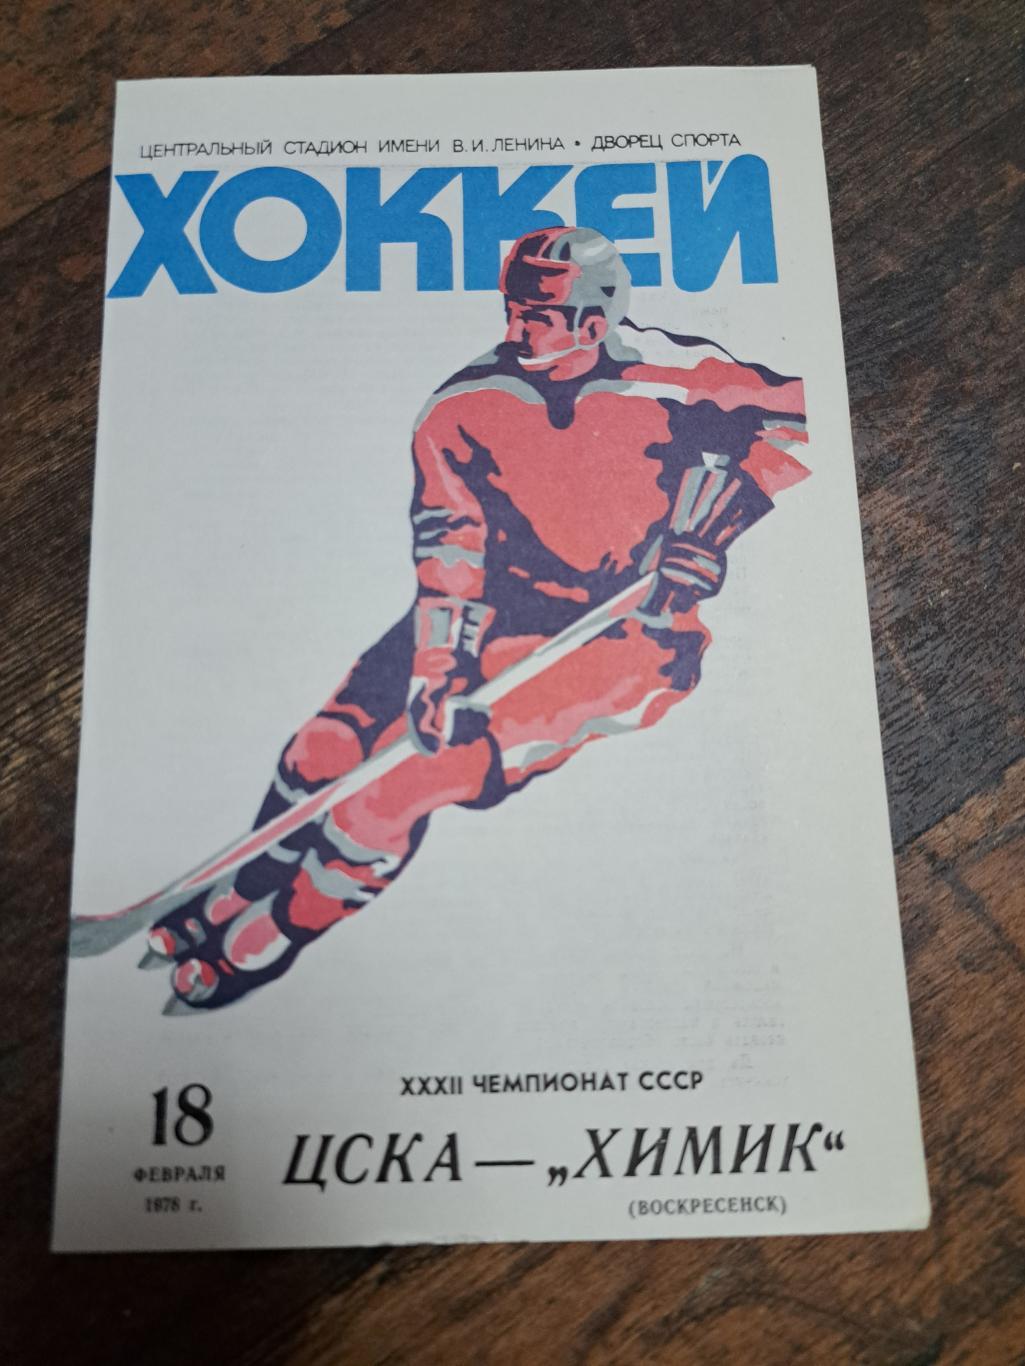 ЦСКА Москва - Химик 18.02.1978 отличное состояние!